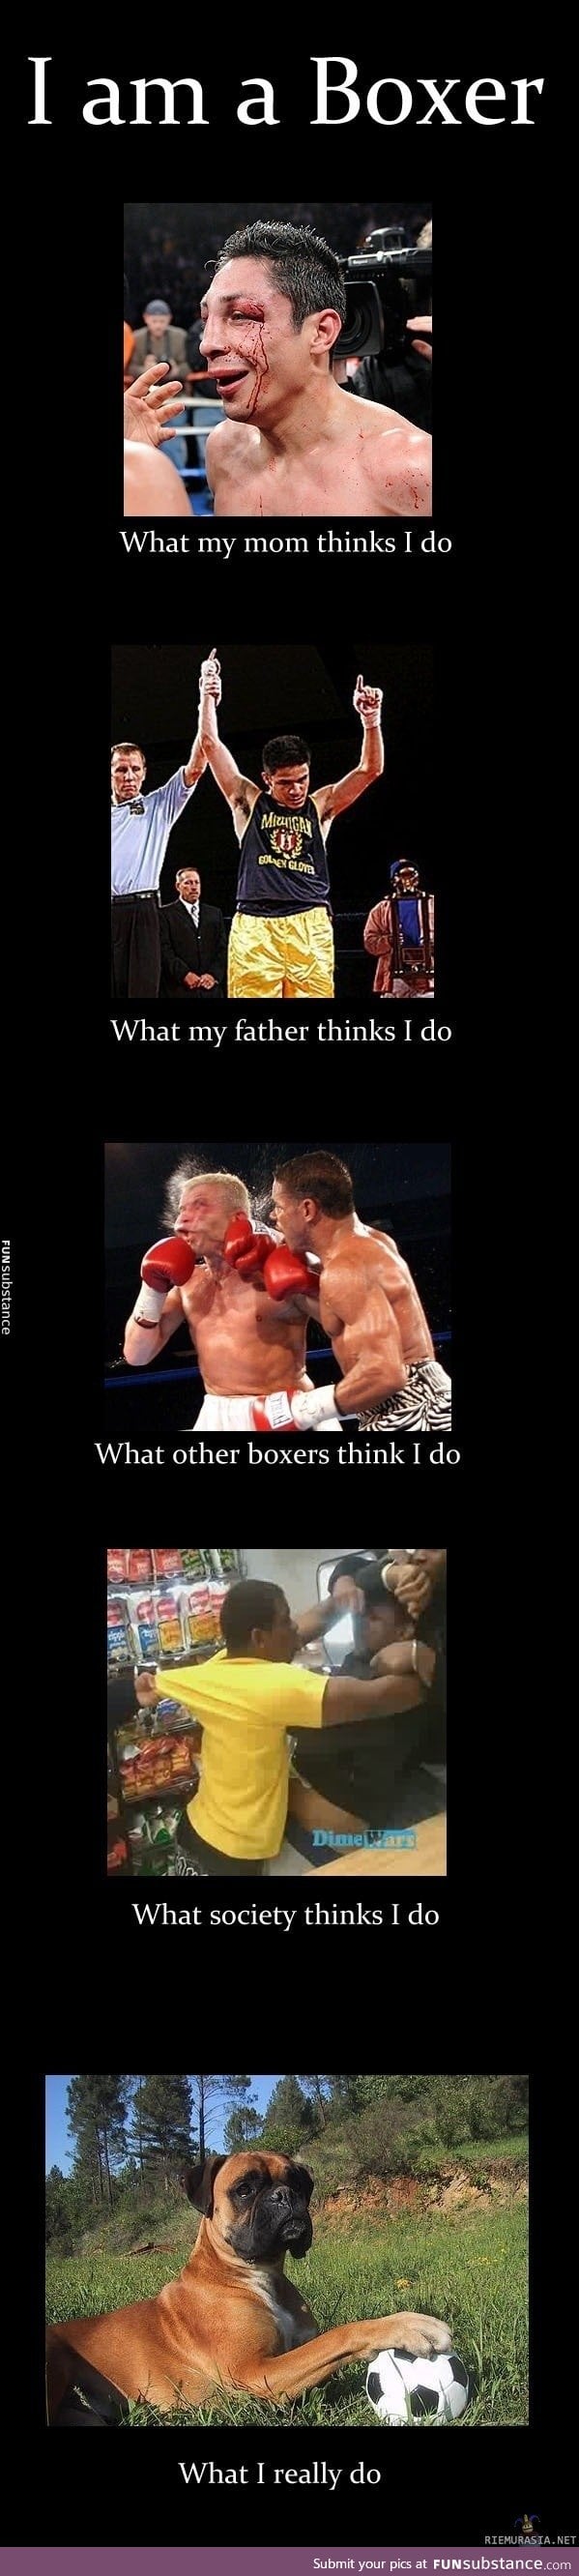 Life as a boxer